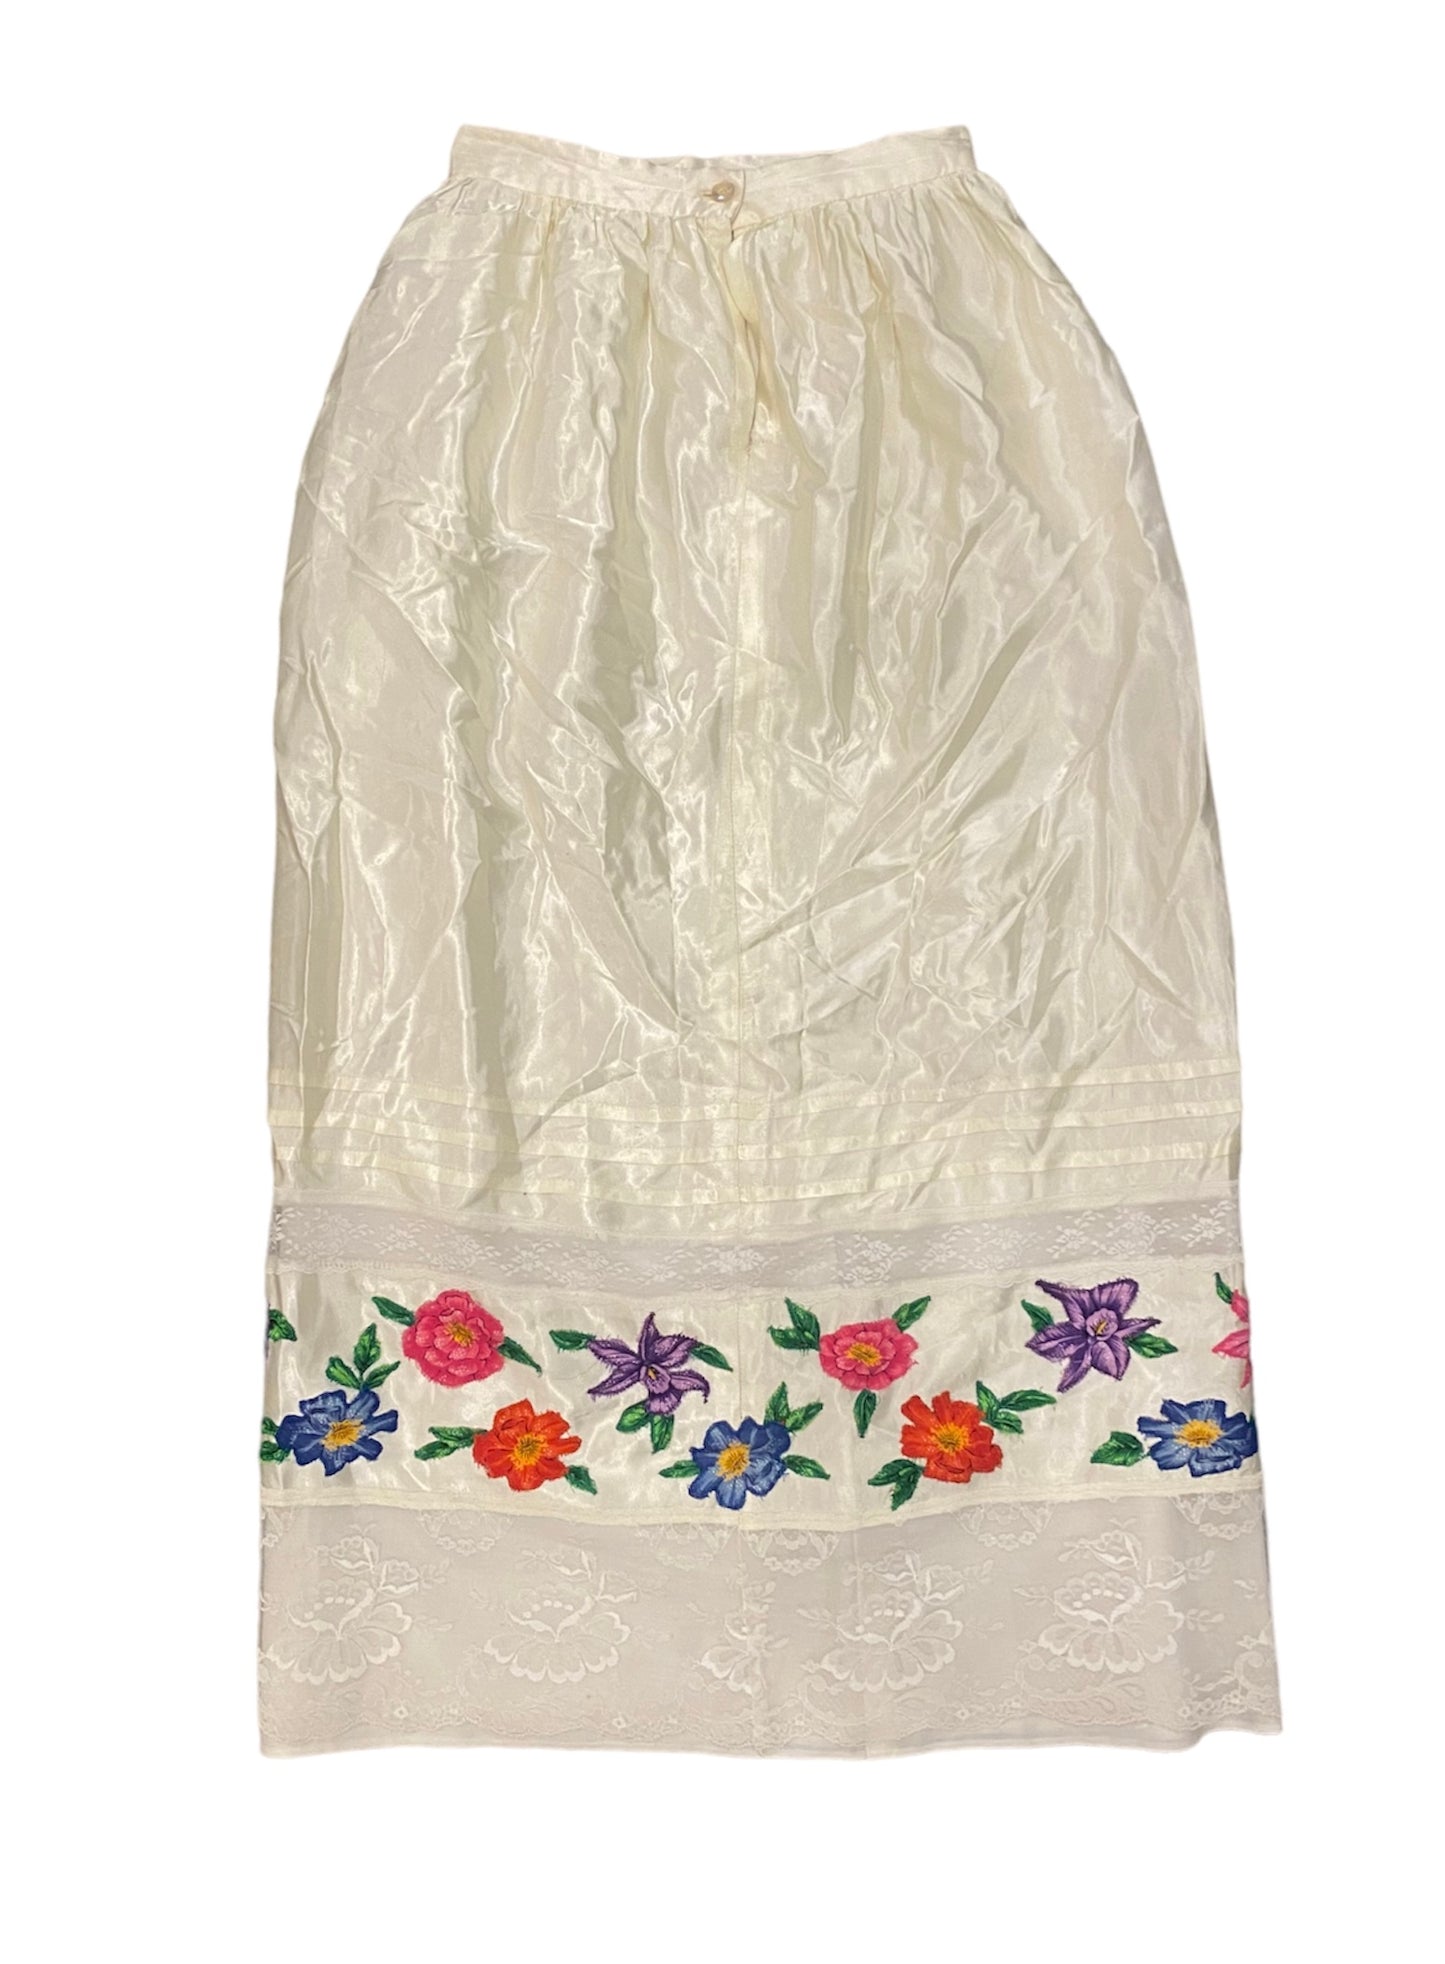 1960’s Handmade Floral Satin Skirt